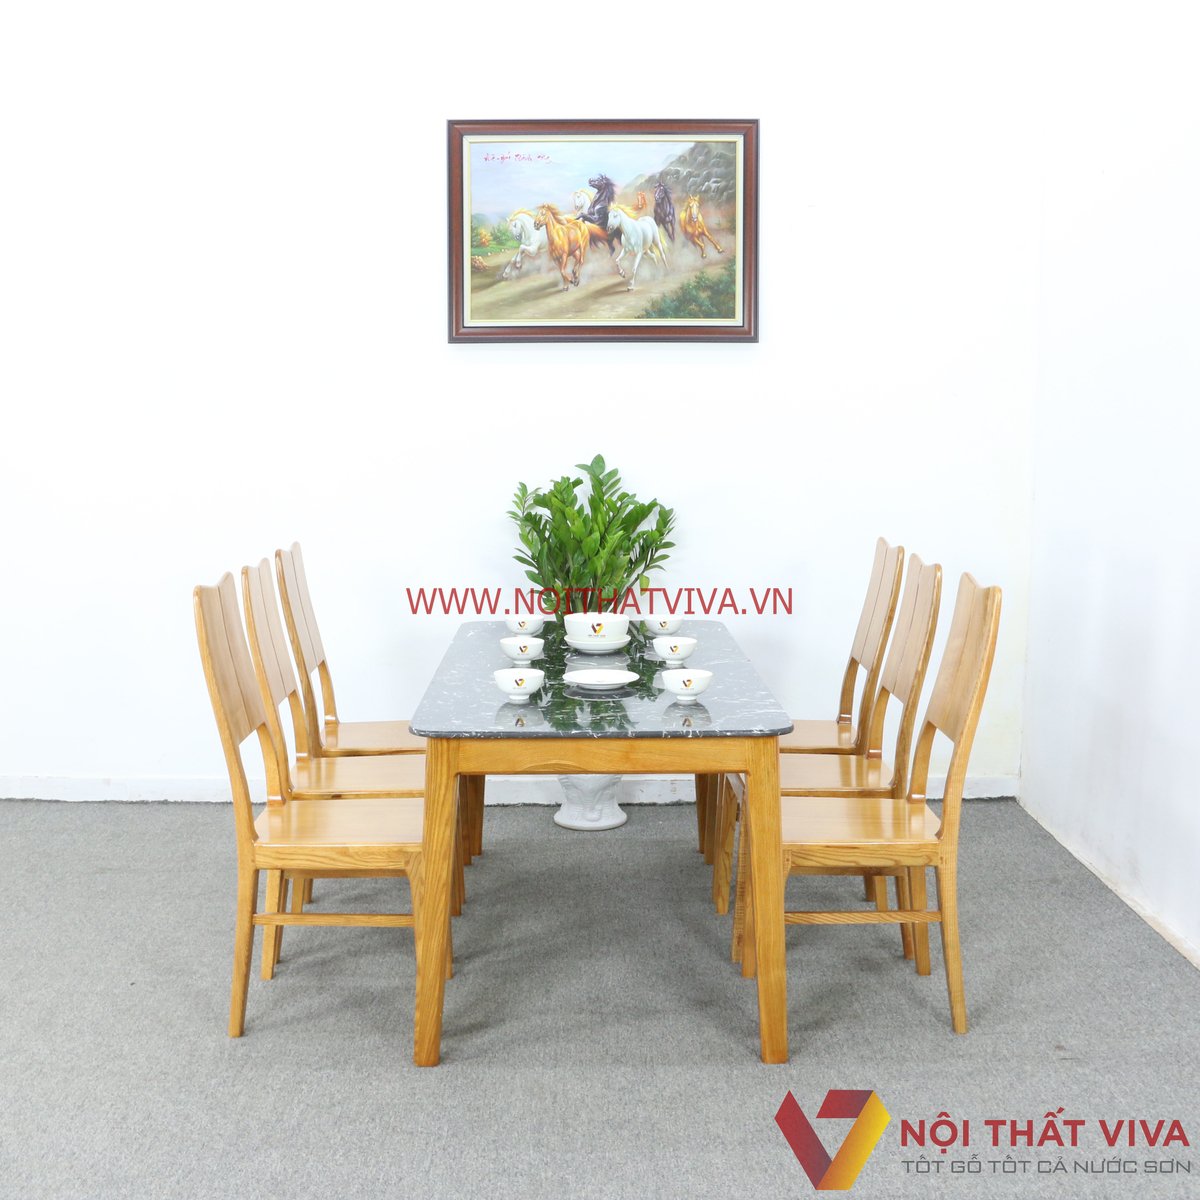 Top những bộ bàn ăn gỗ sồi tự nhiên bán chạy nhất tại Nội thất Viva